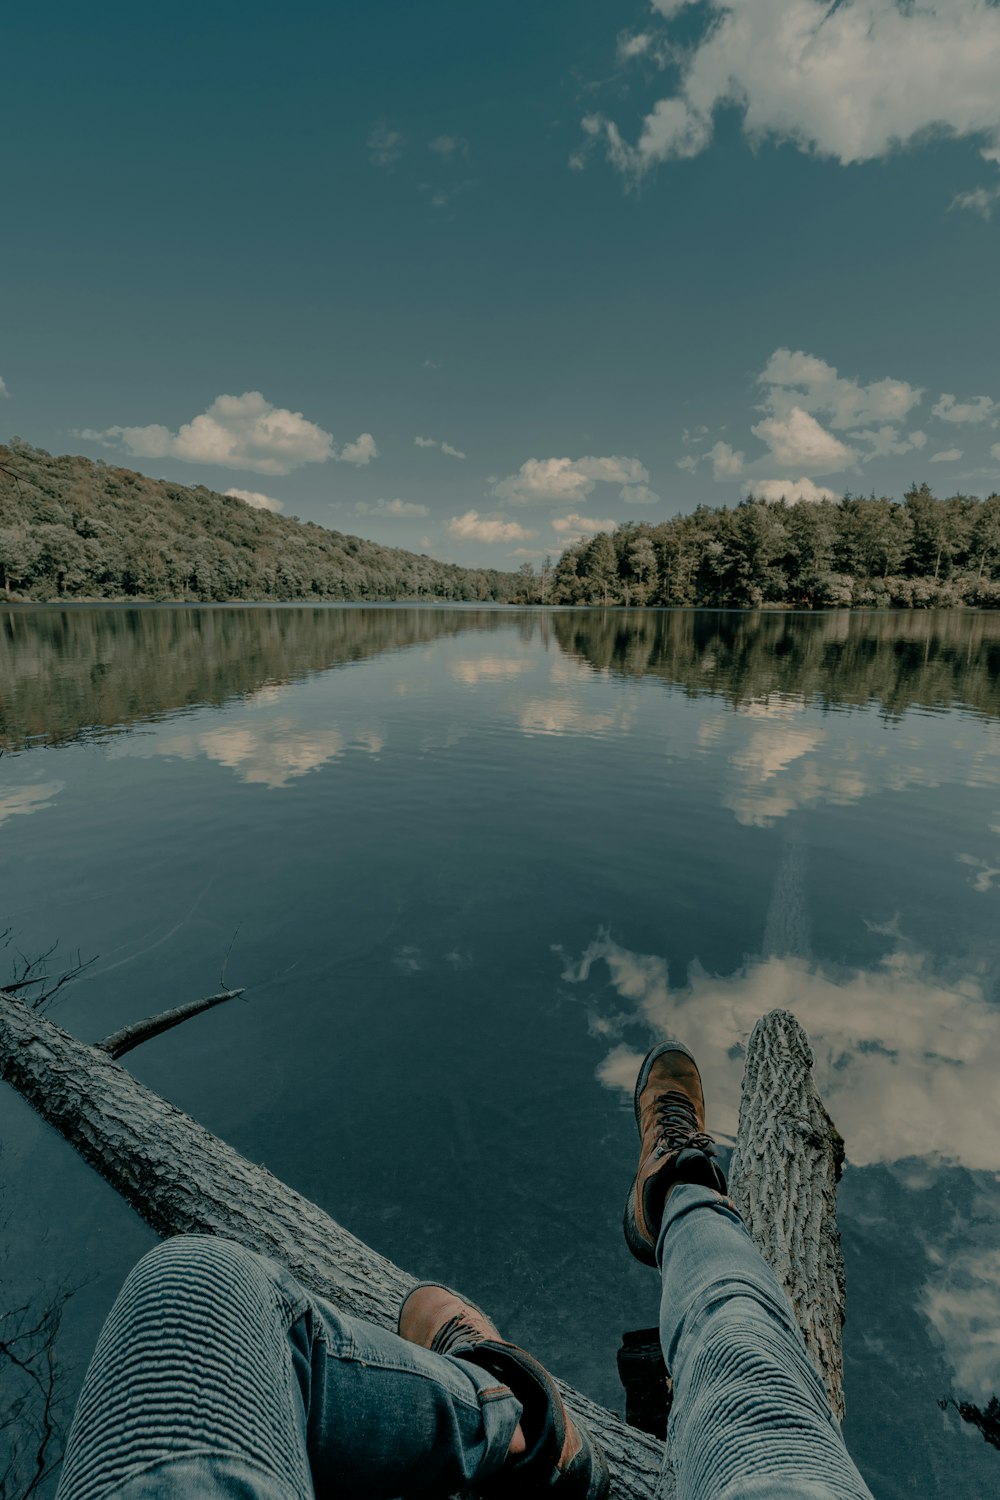 Persona in scarpe da ginnastica bianche e nere che si siede sul molo di legno sopra il fiume durante il giorno